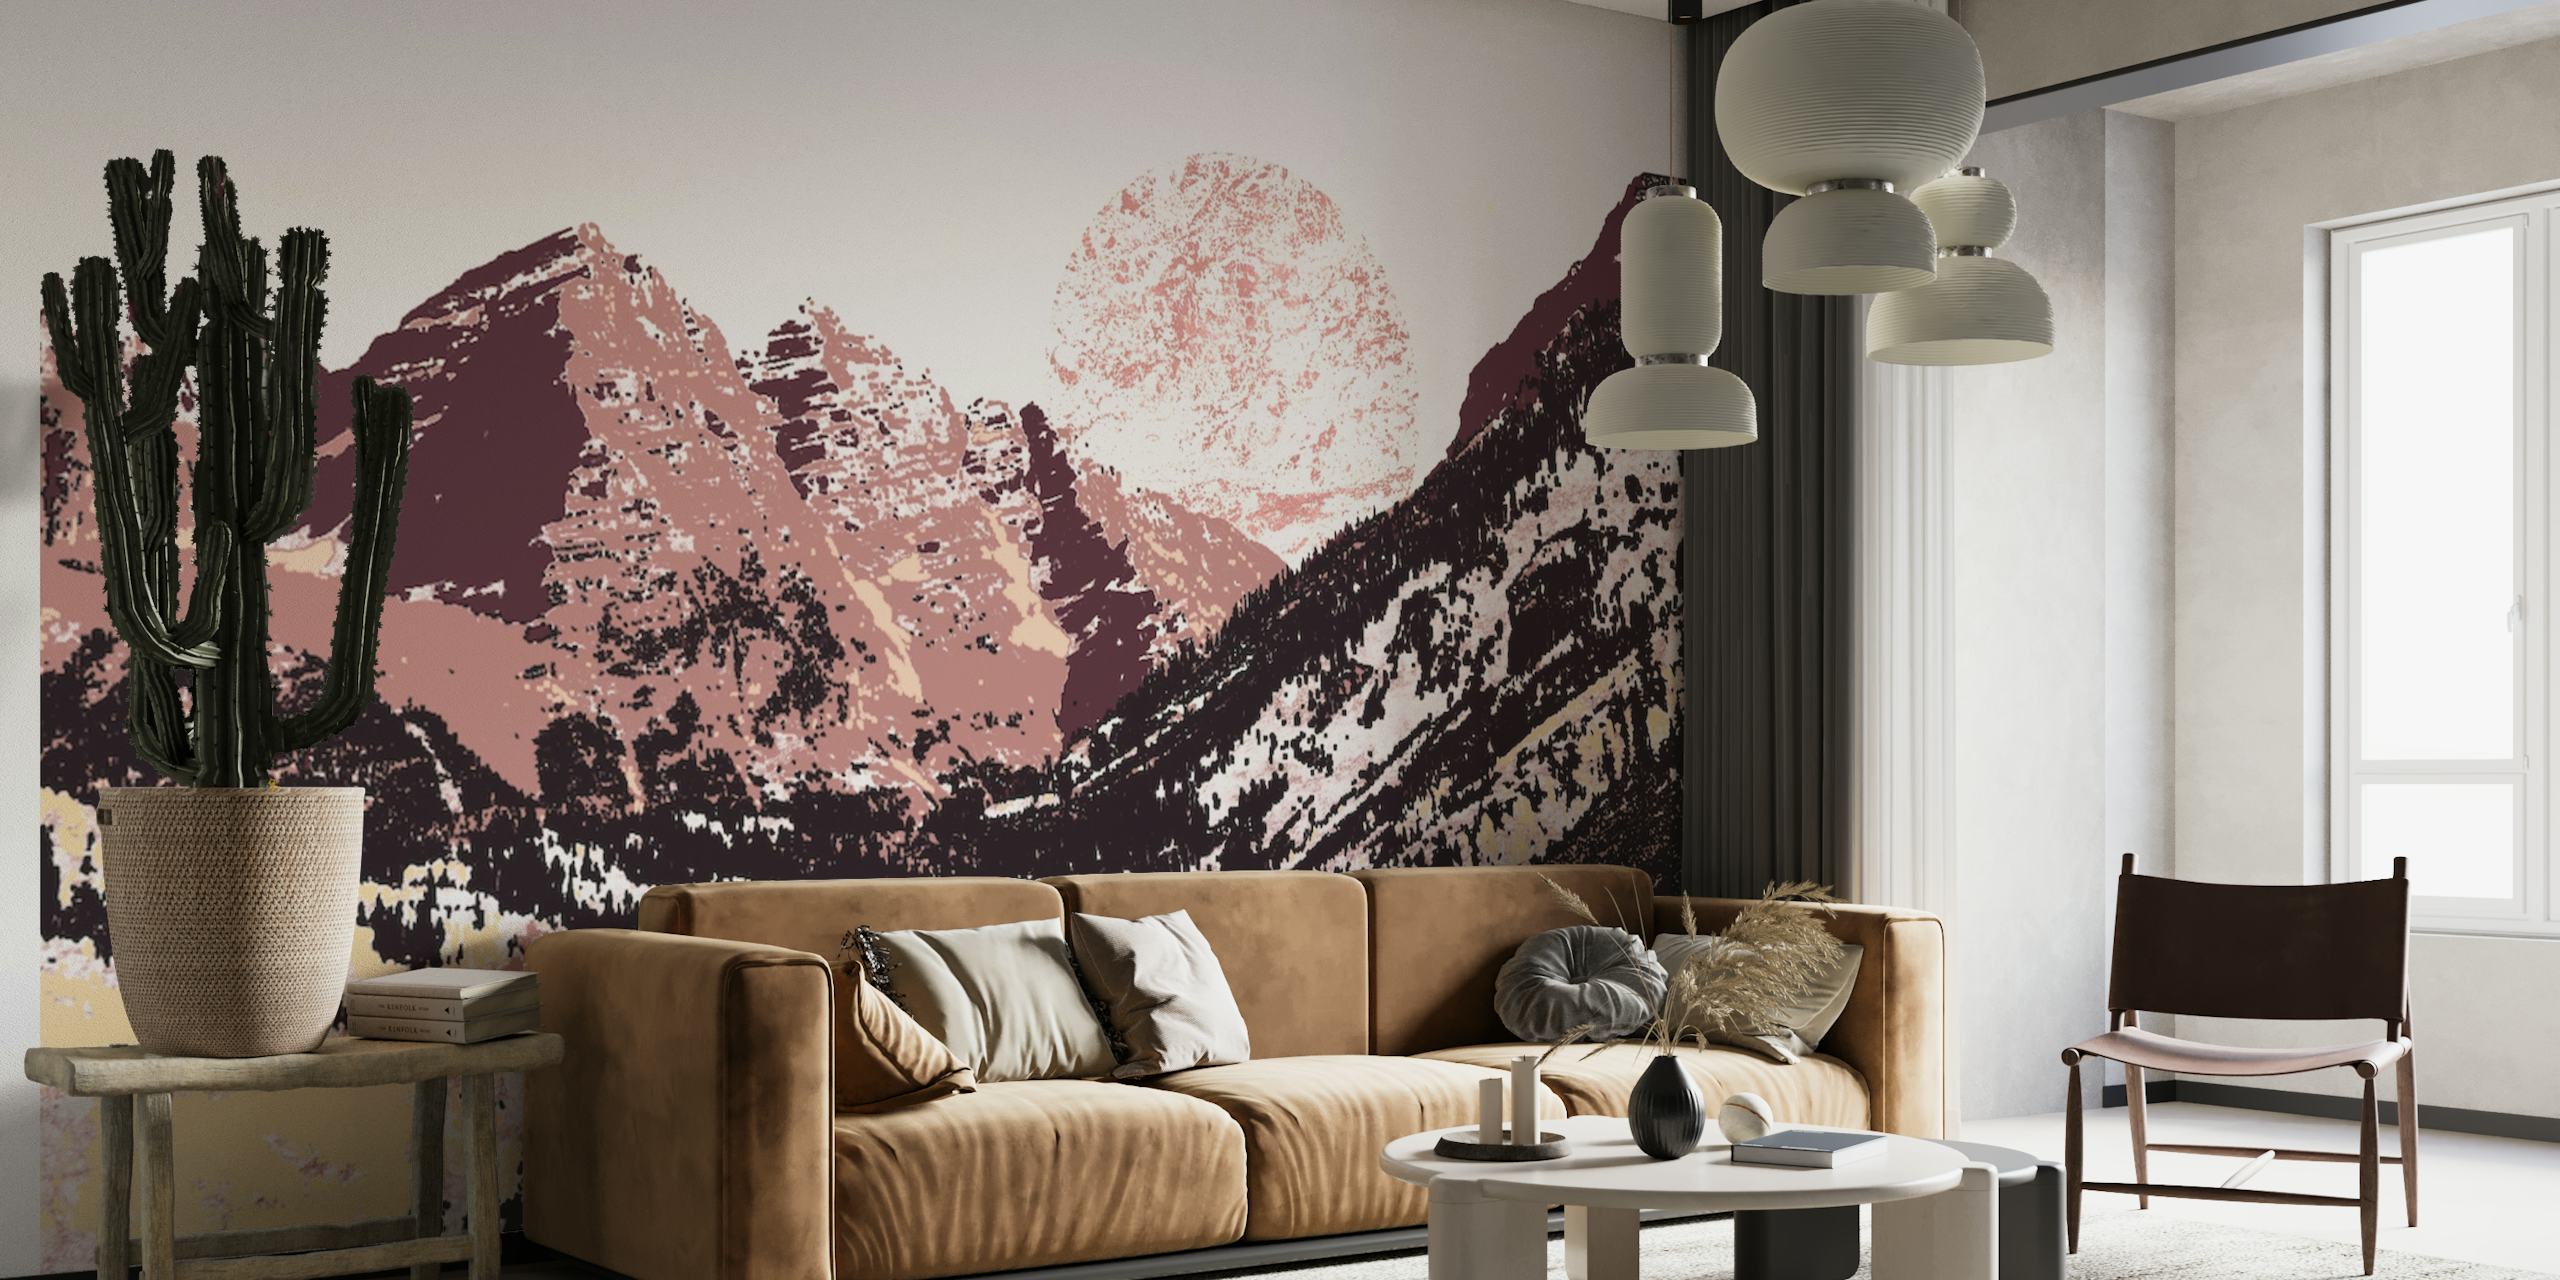 Et vægmaleri af en bjergkæde med jordagtige brune toner og solopgangsnuancer